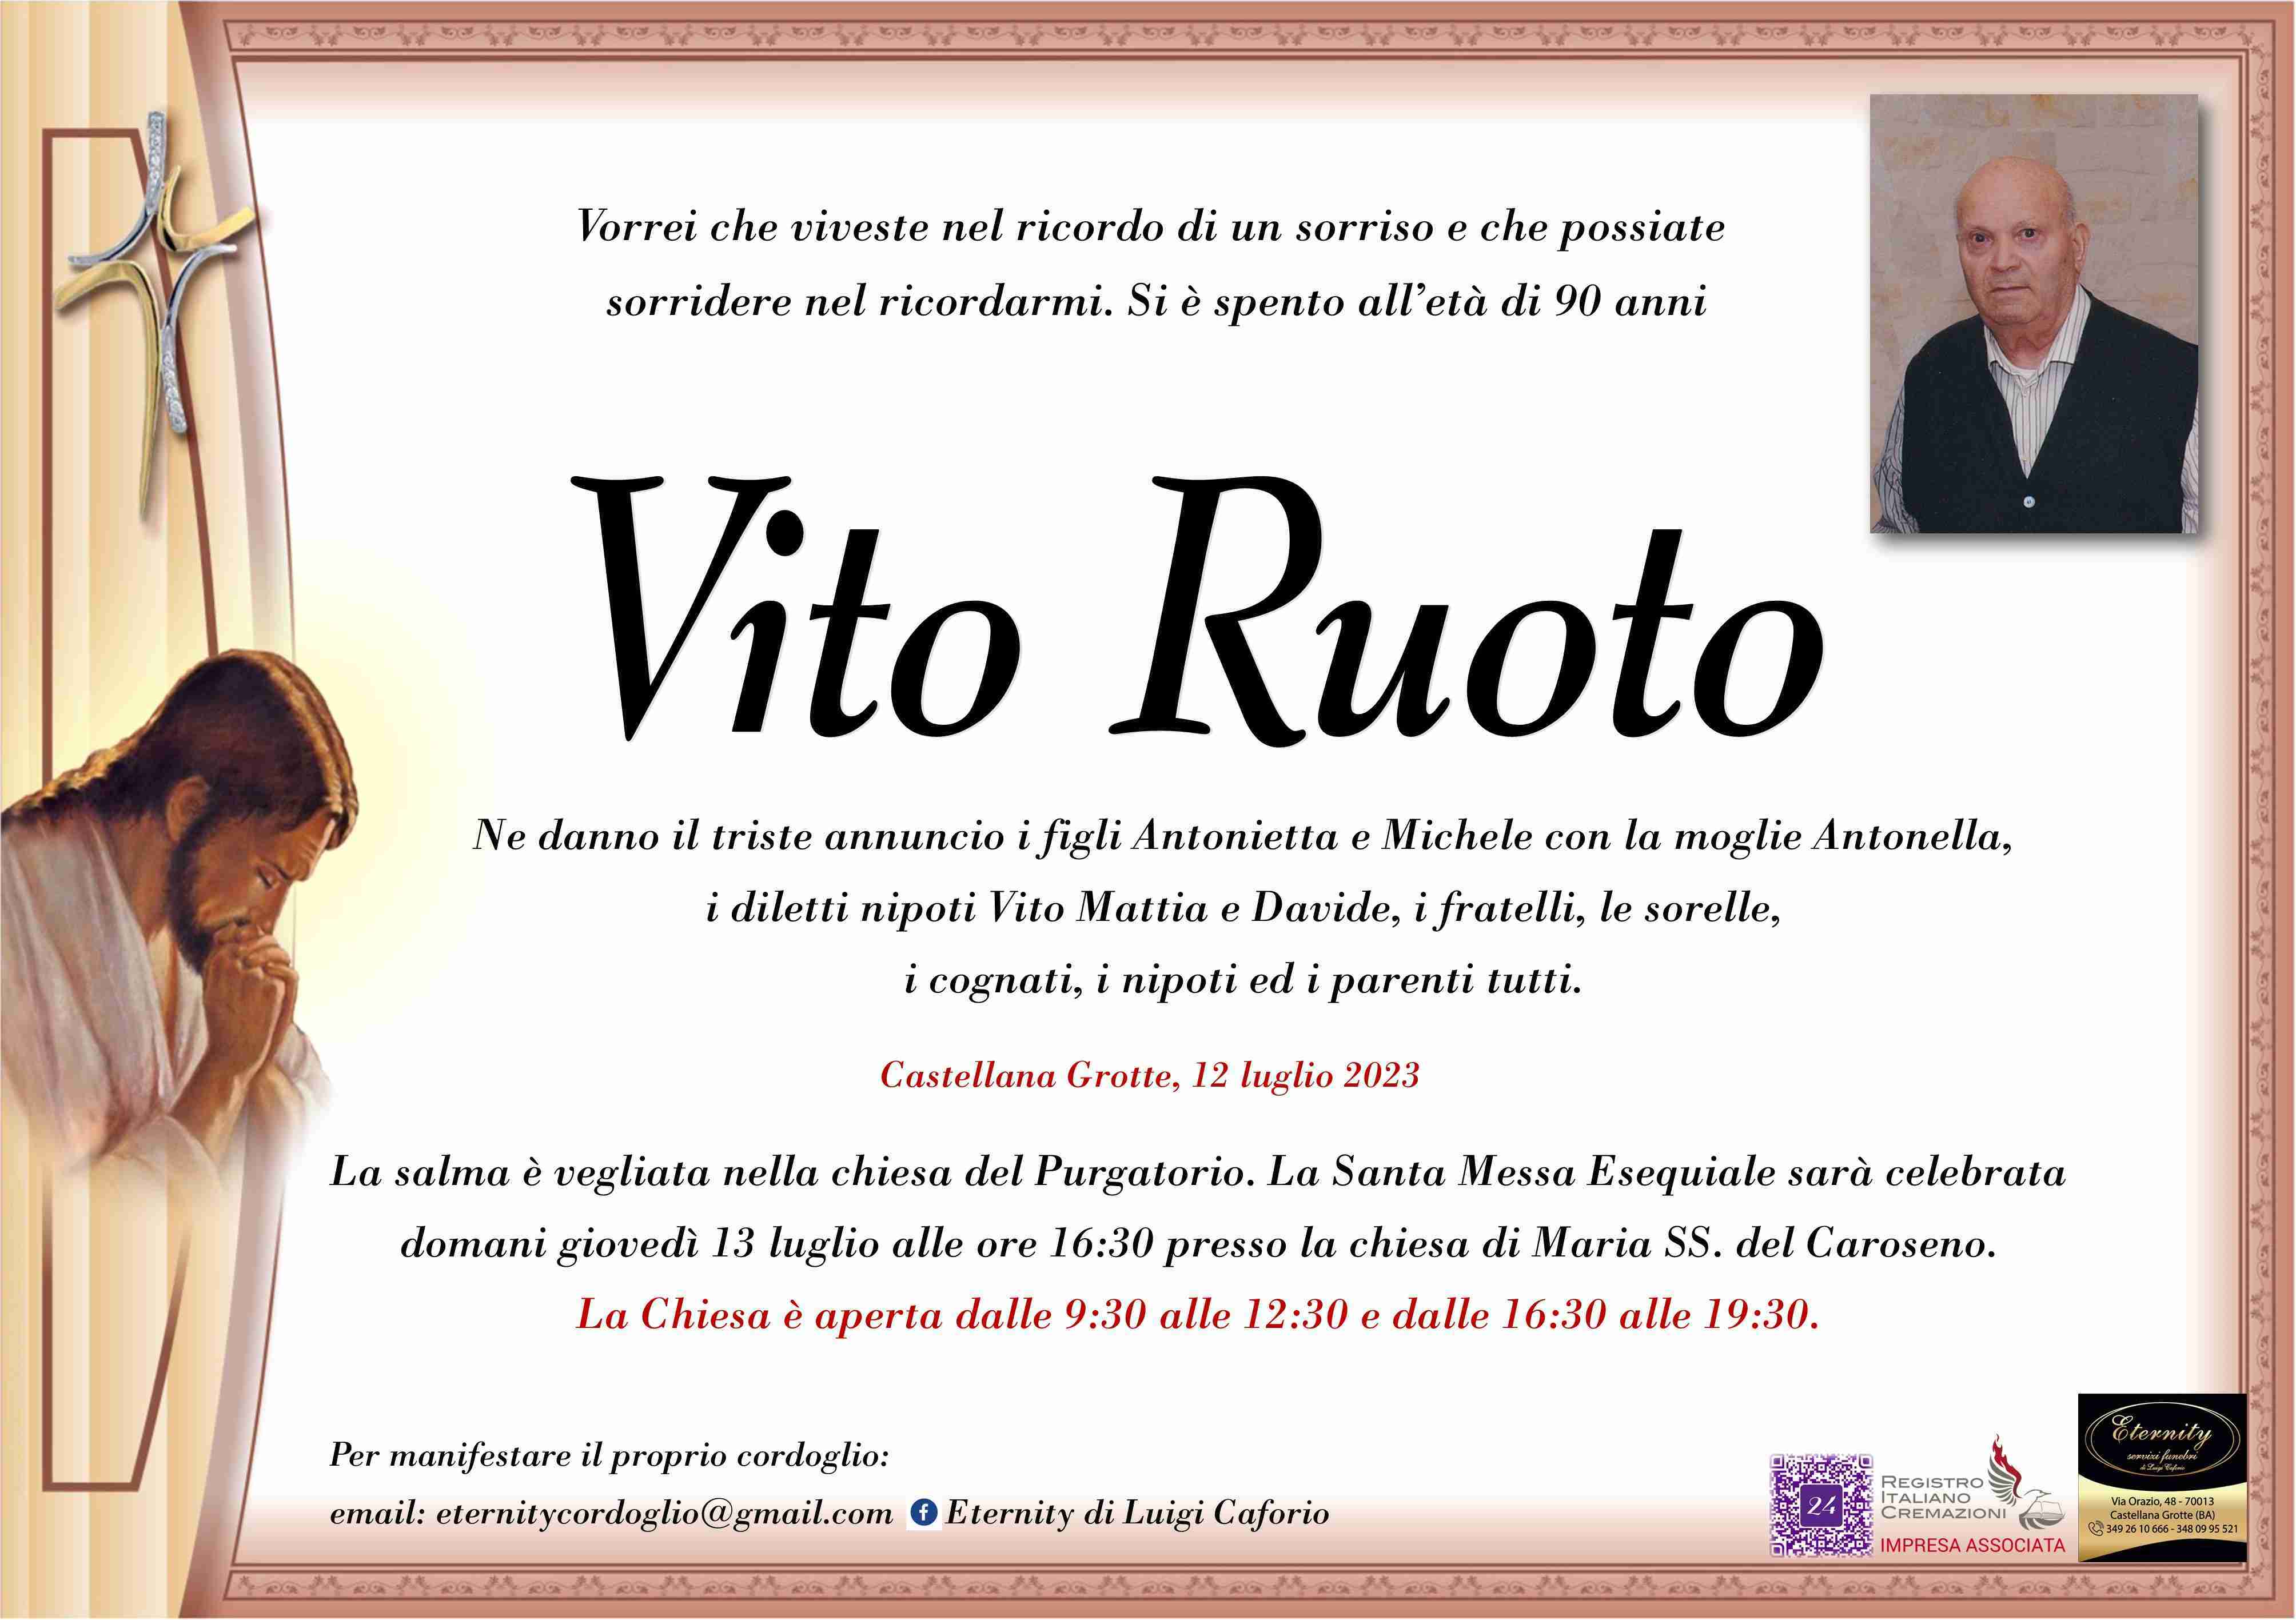 Vito Ruoto